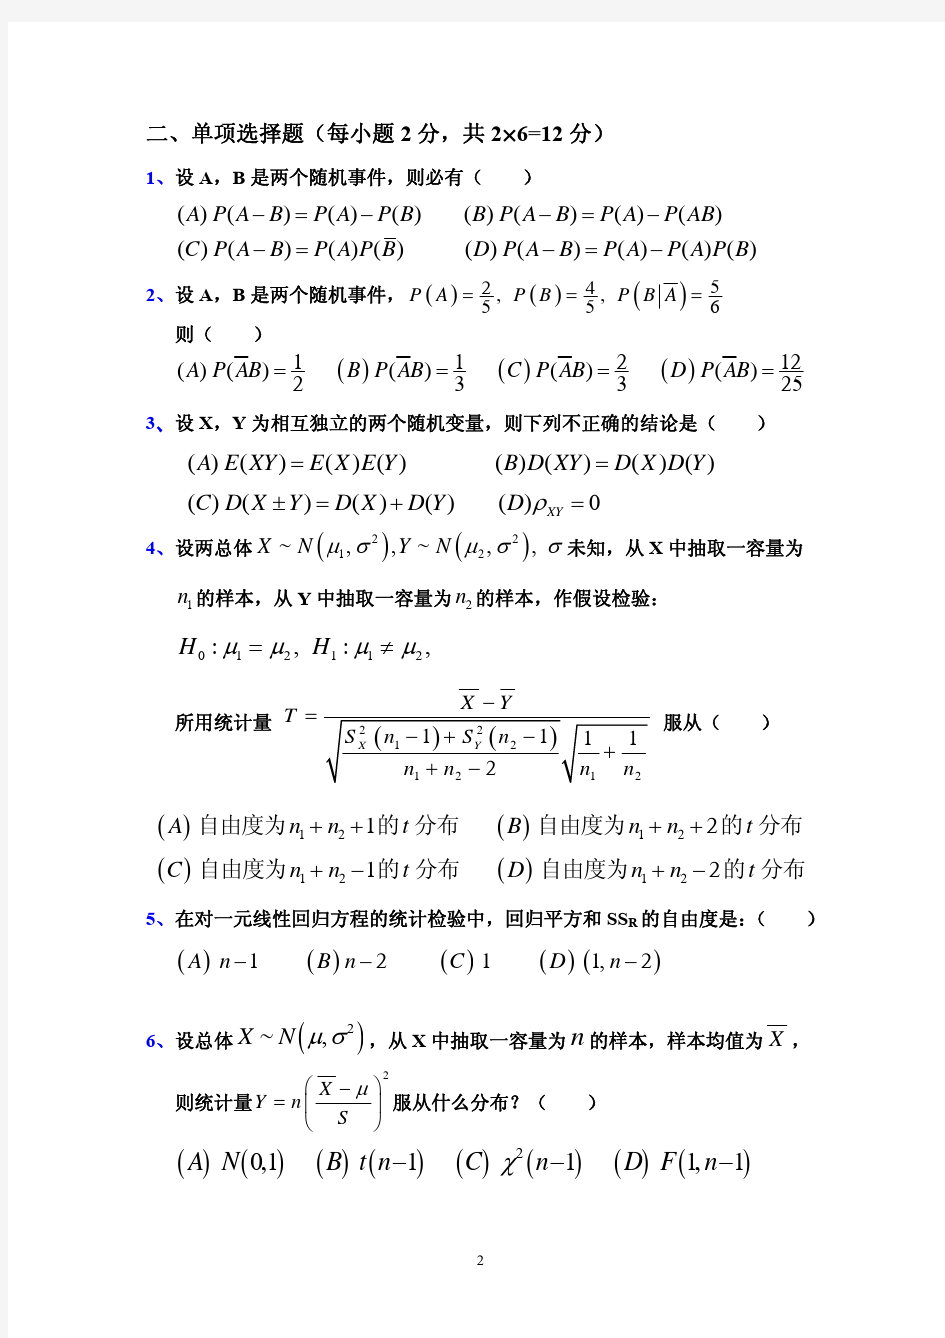 华南农业大学 数学2 试卷